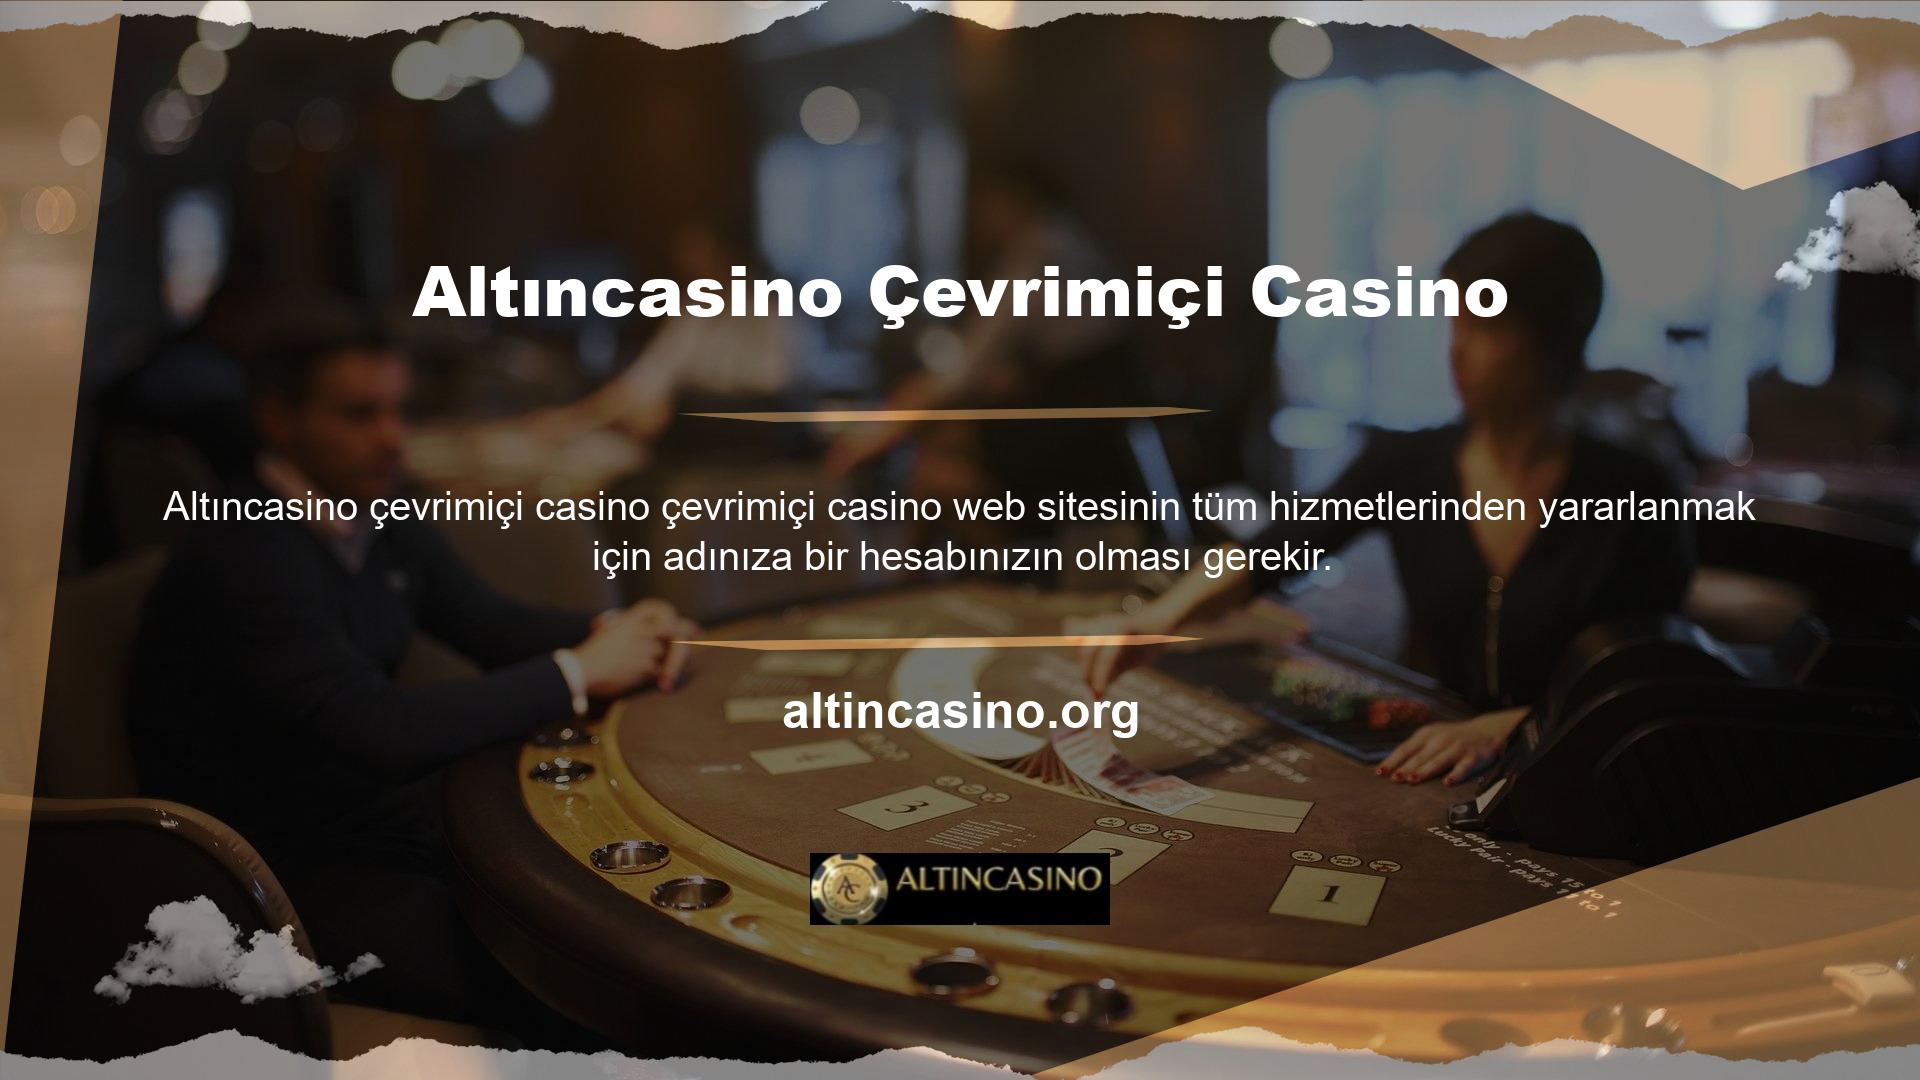 Bu web sitesi canlı bahis, canlı casino, spor bahisleri, sanal bahis, canlı bahis vb